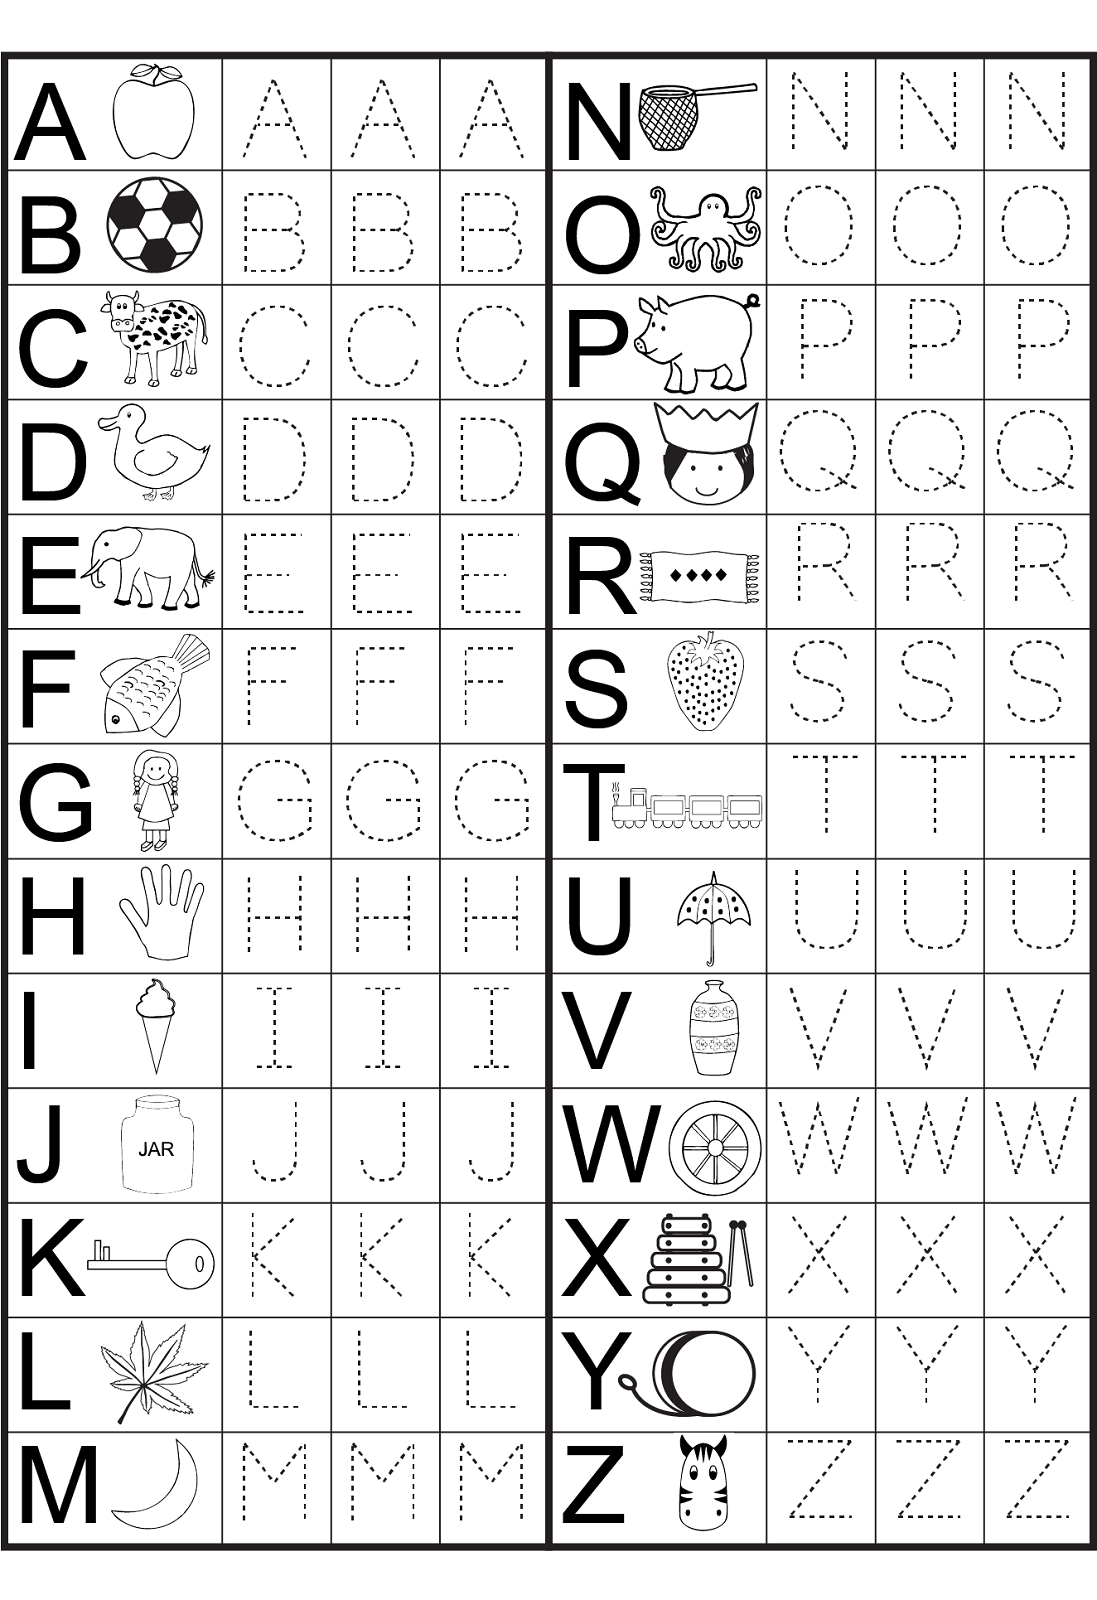 Kindergarten Alphabet Worksheets To Print Preschool Worksheets 